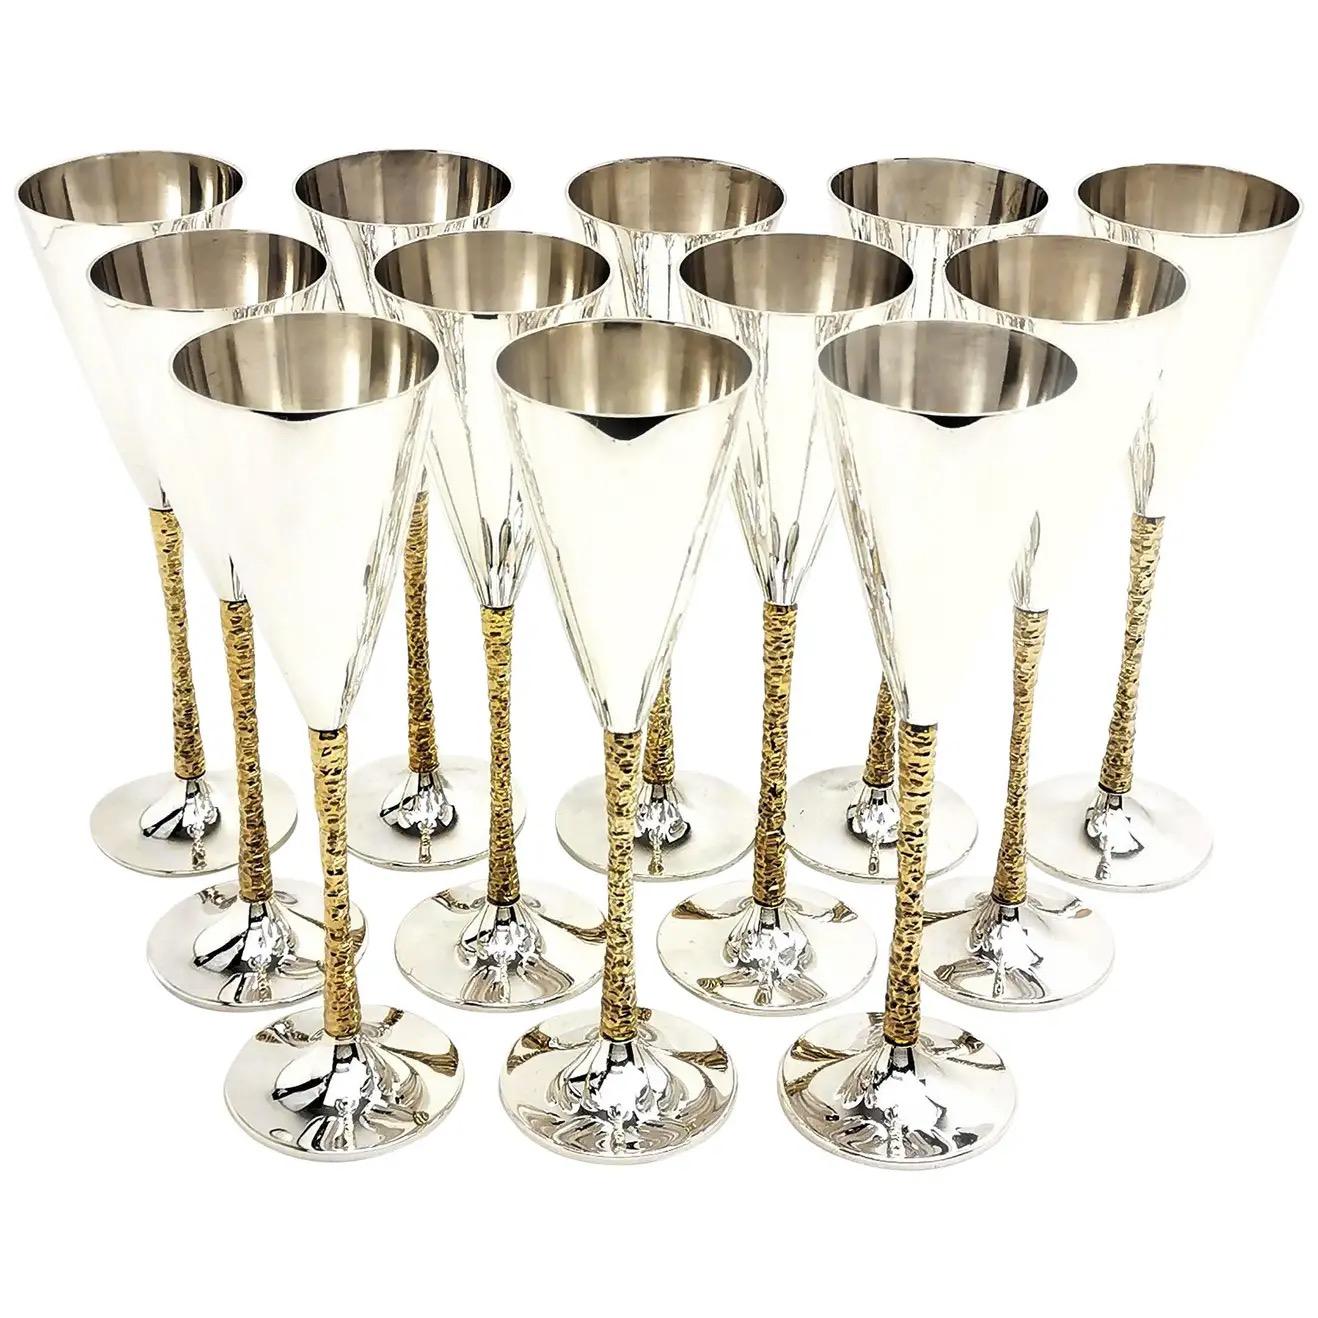 Achtundzwanzig englische Champagnerflöten aus paketvergoldetem Silber von Stuart Devlin, London, 1977-81. Sie sind auf den Sockeln mit verschiedenen Datumsbuchstaben gekennzeichnet: 1977 (4), 1978 (6), 1979 (6), 1980 (9) und 1981 (3).
 